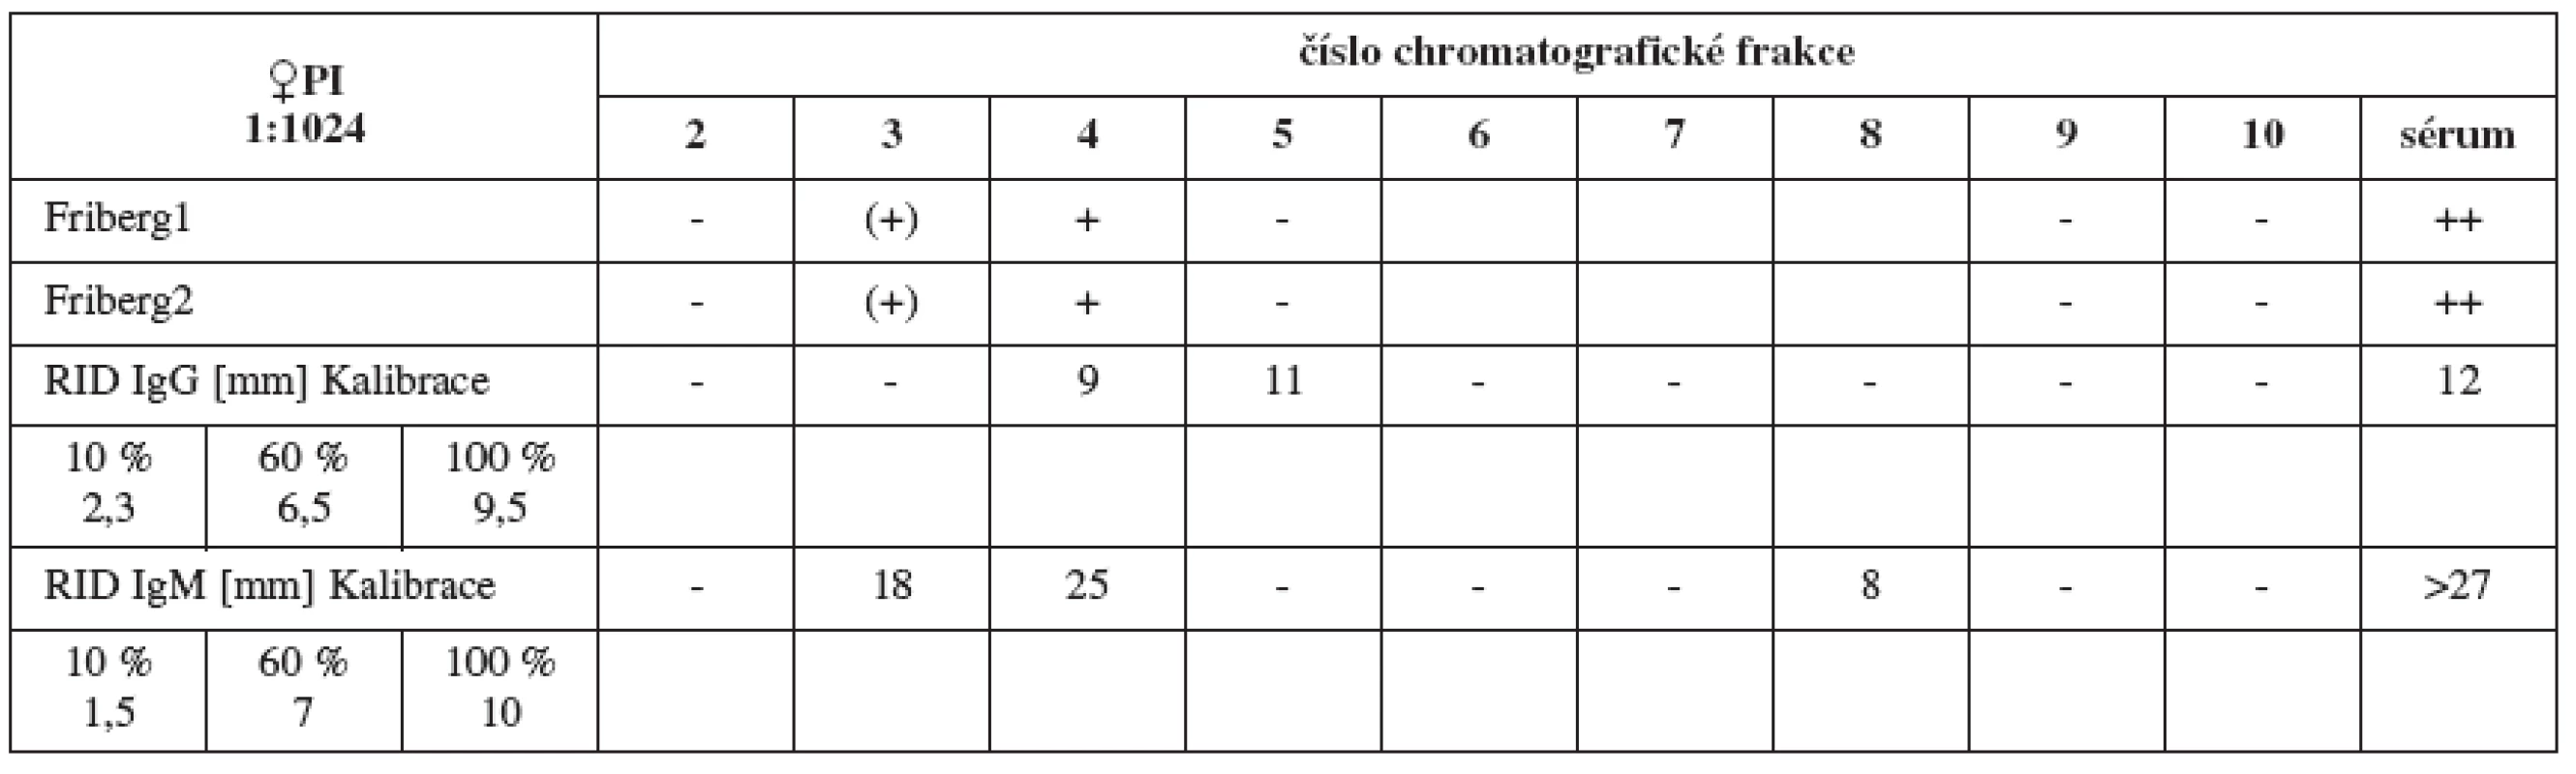 Srovnání výsledků Fribergova testu pro jednotlivé chromatografické frakce séra PI a radiální imunodifuze